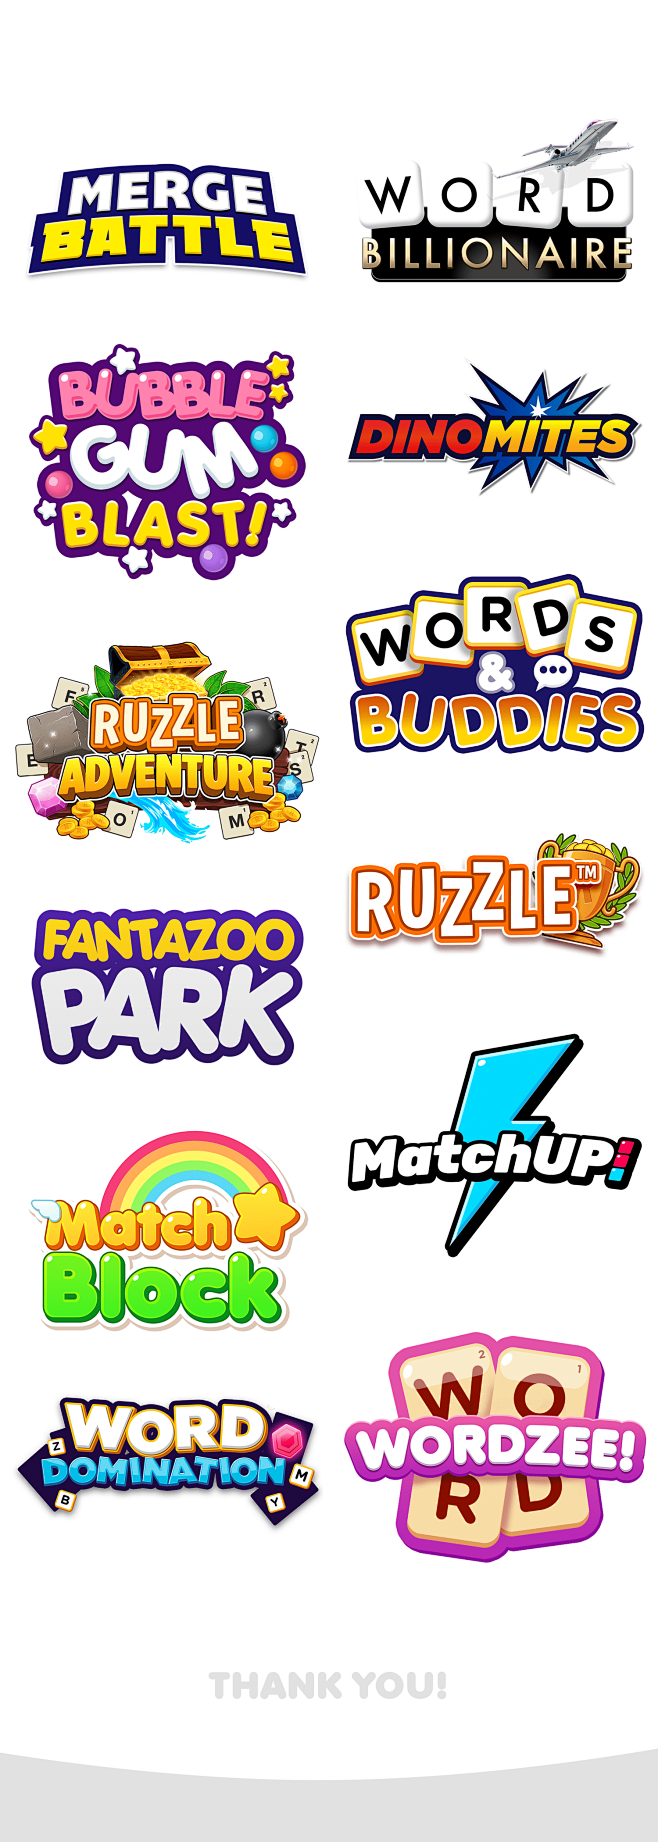 Mobile Game Logos